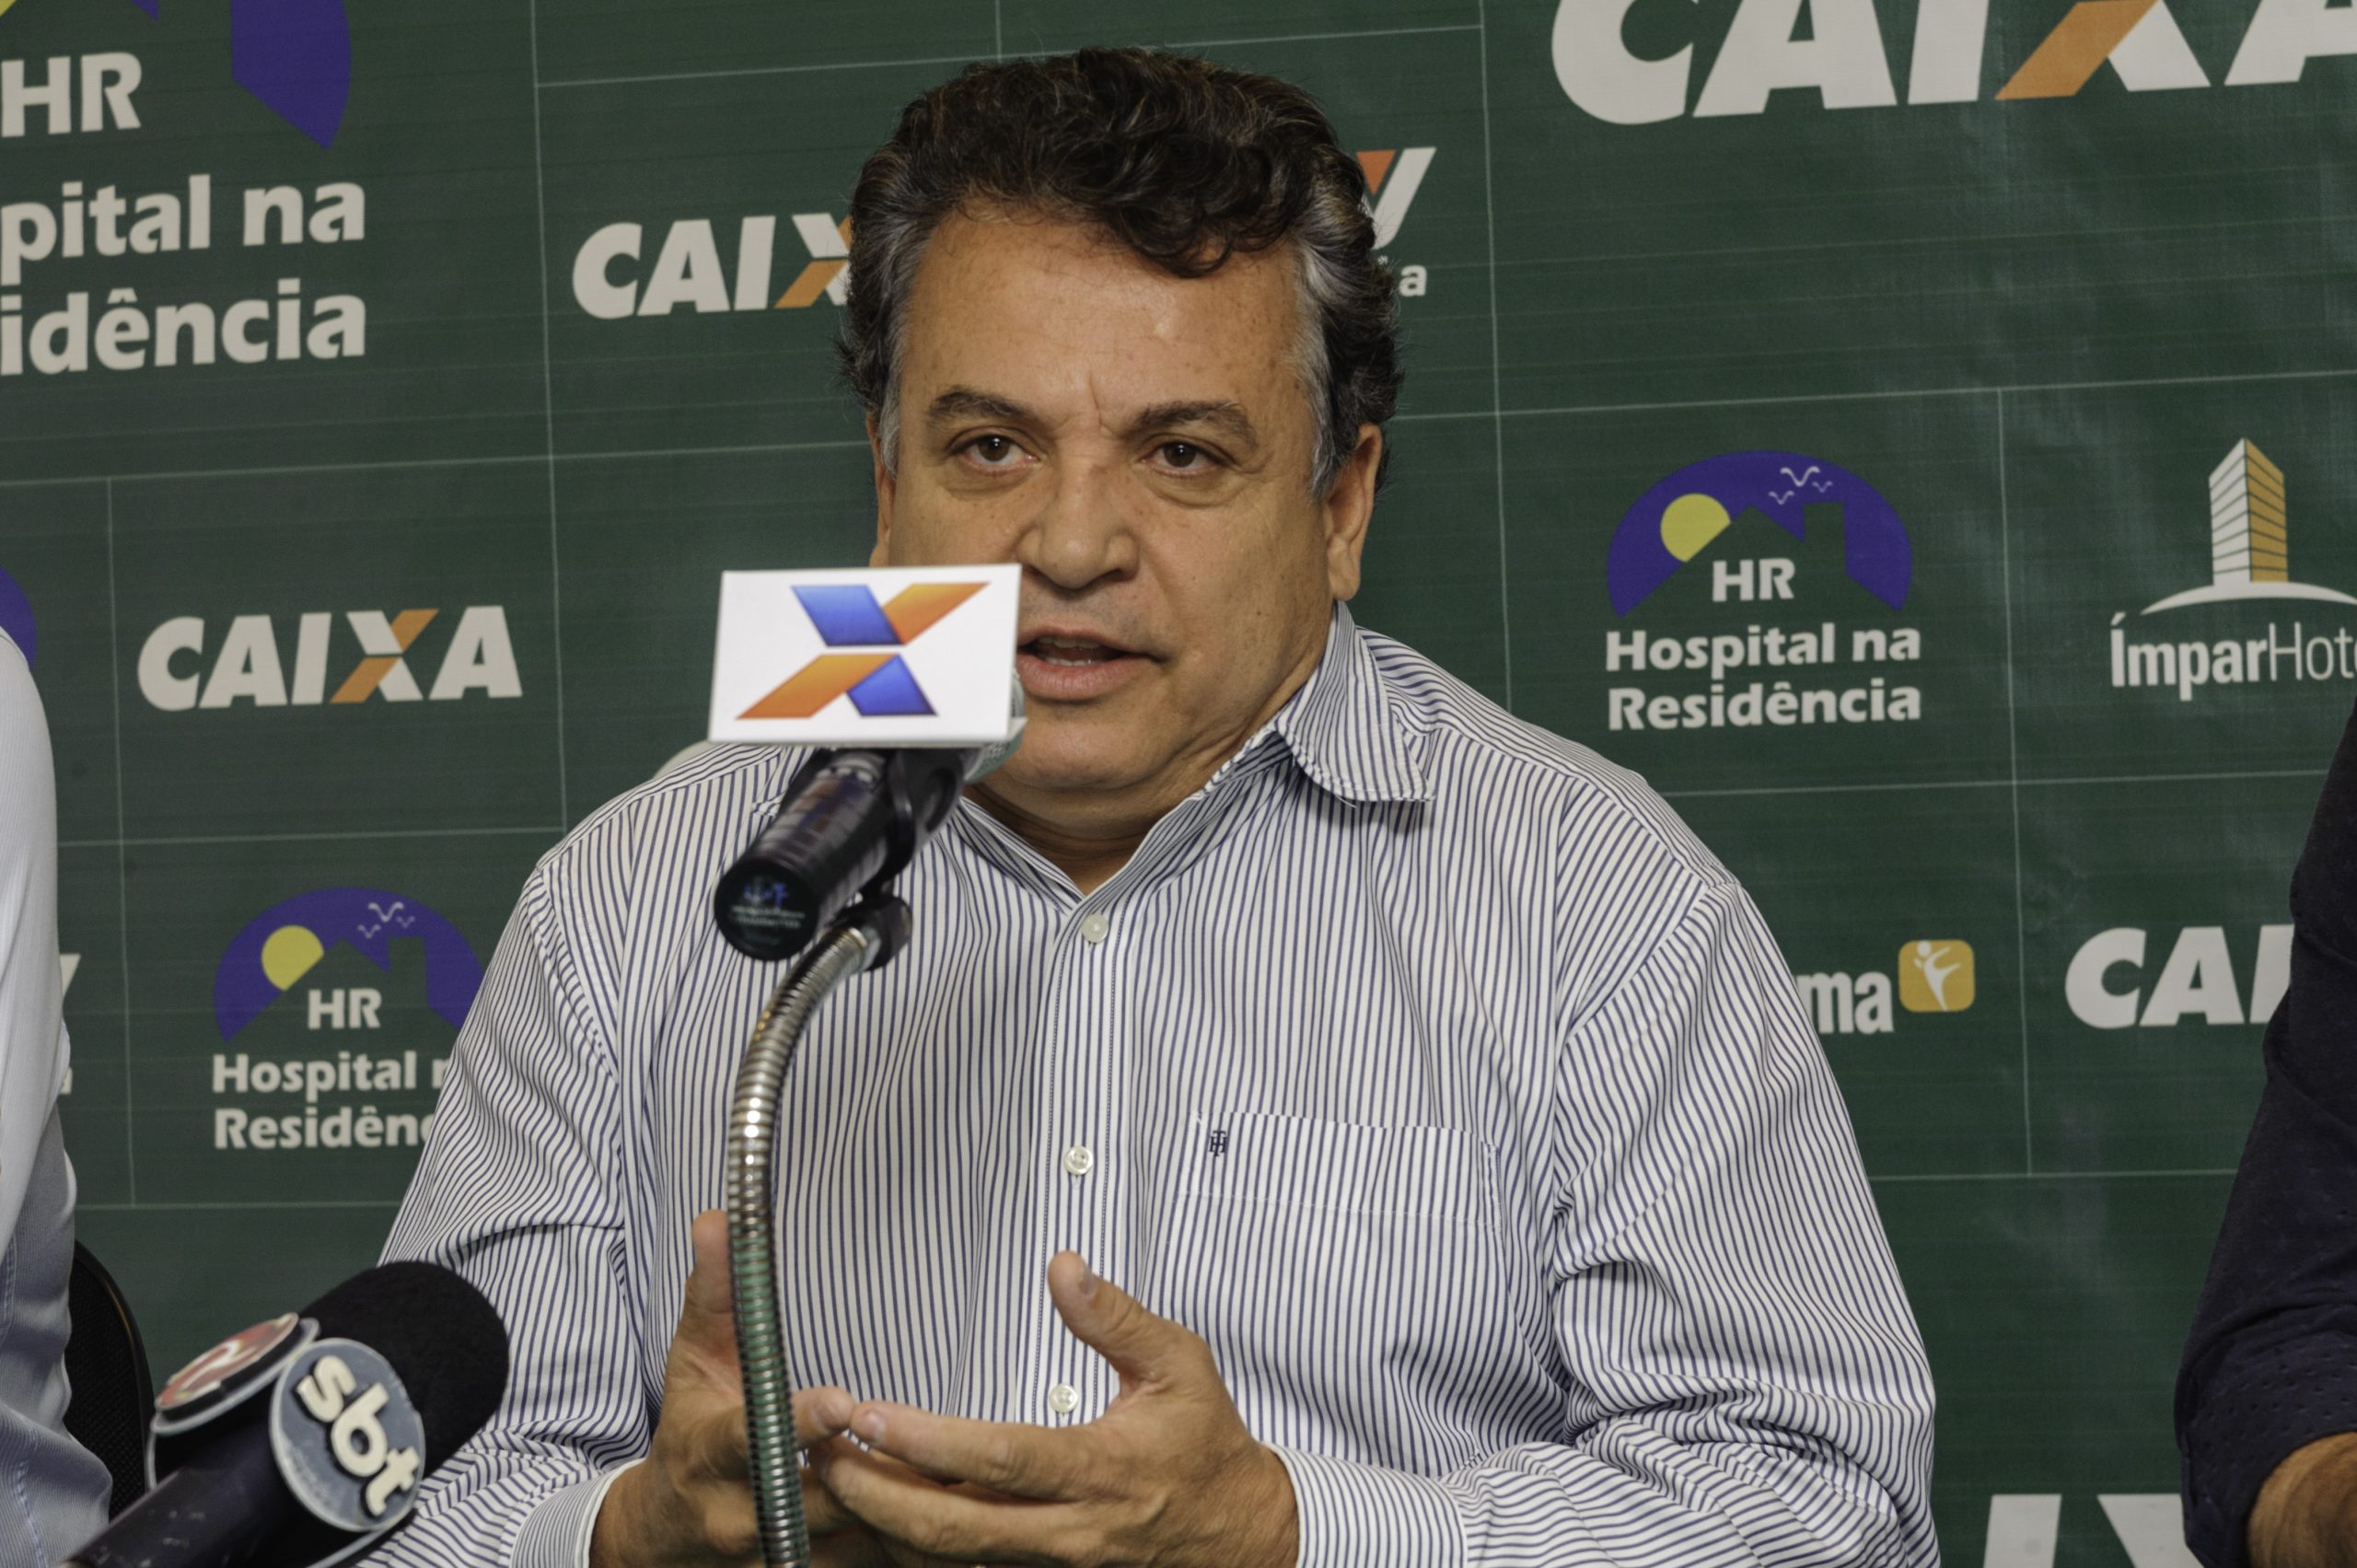 Presidente do América se manifesta contrário à paralisação do futebol em Minas Gerais